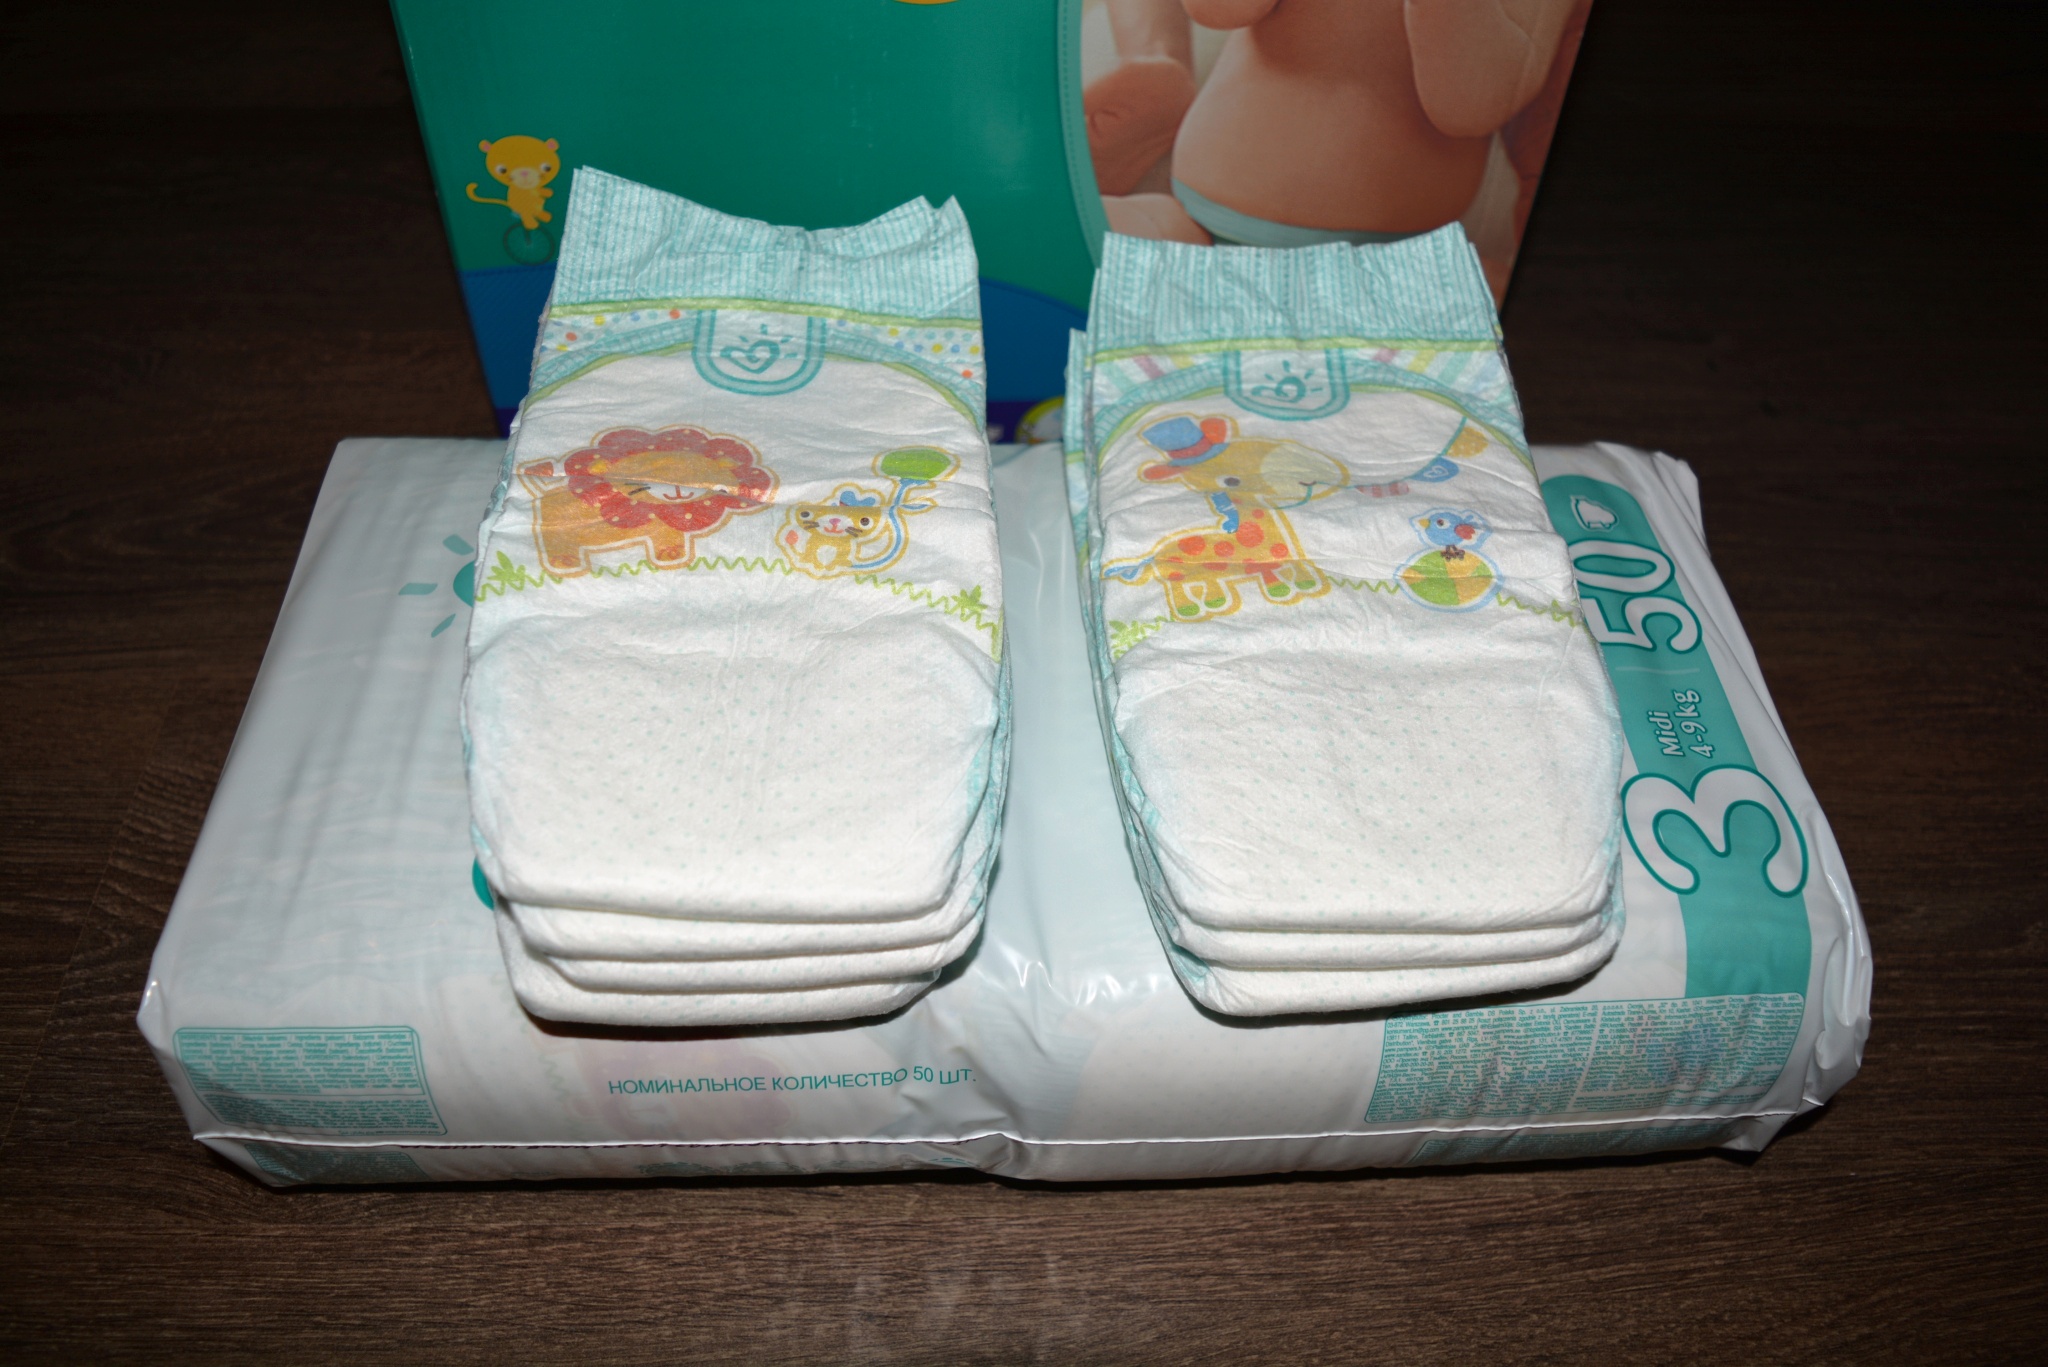 Подгузники для новорожденных мальчиков. Упаковка памперсов. Упаковка подгузников 2 шт. Подгузники для новорожденных без упаковки.